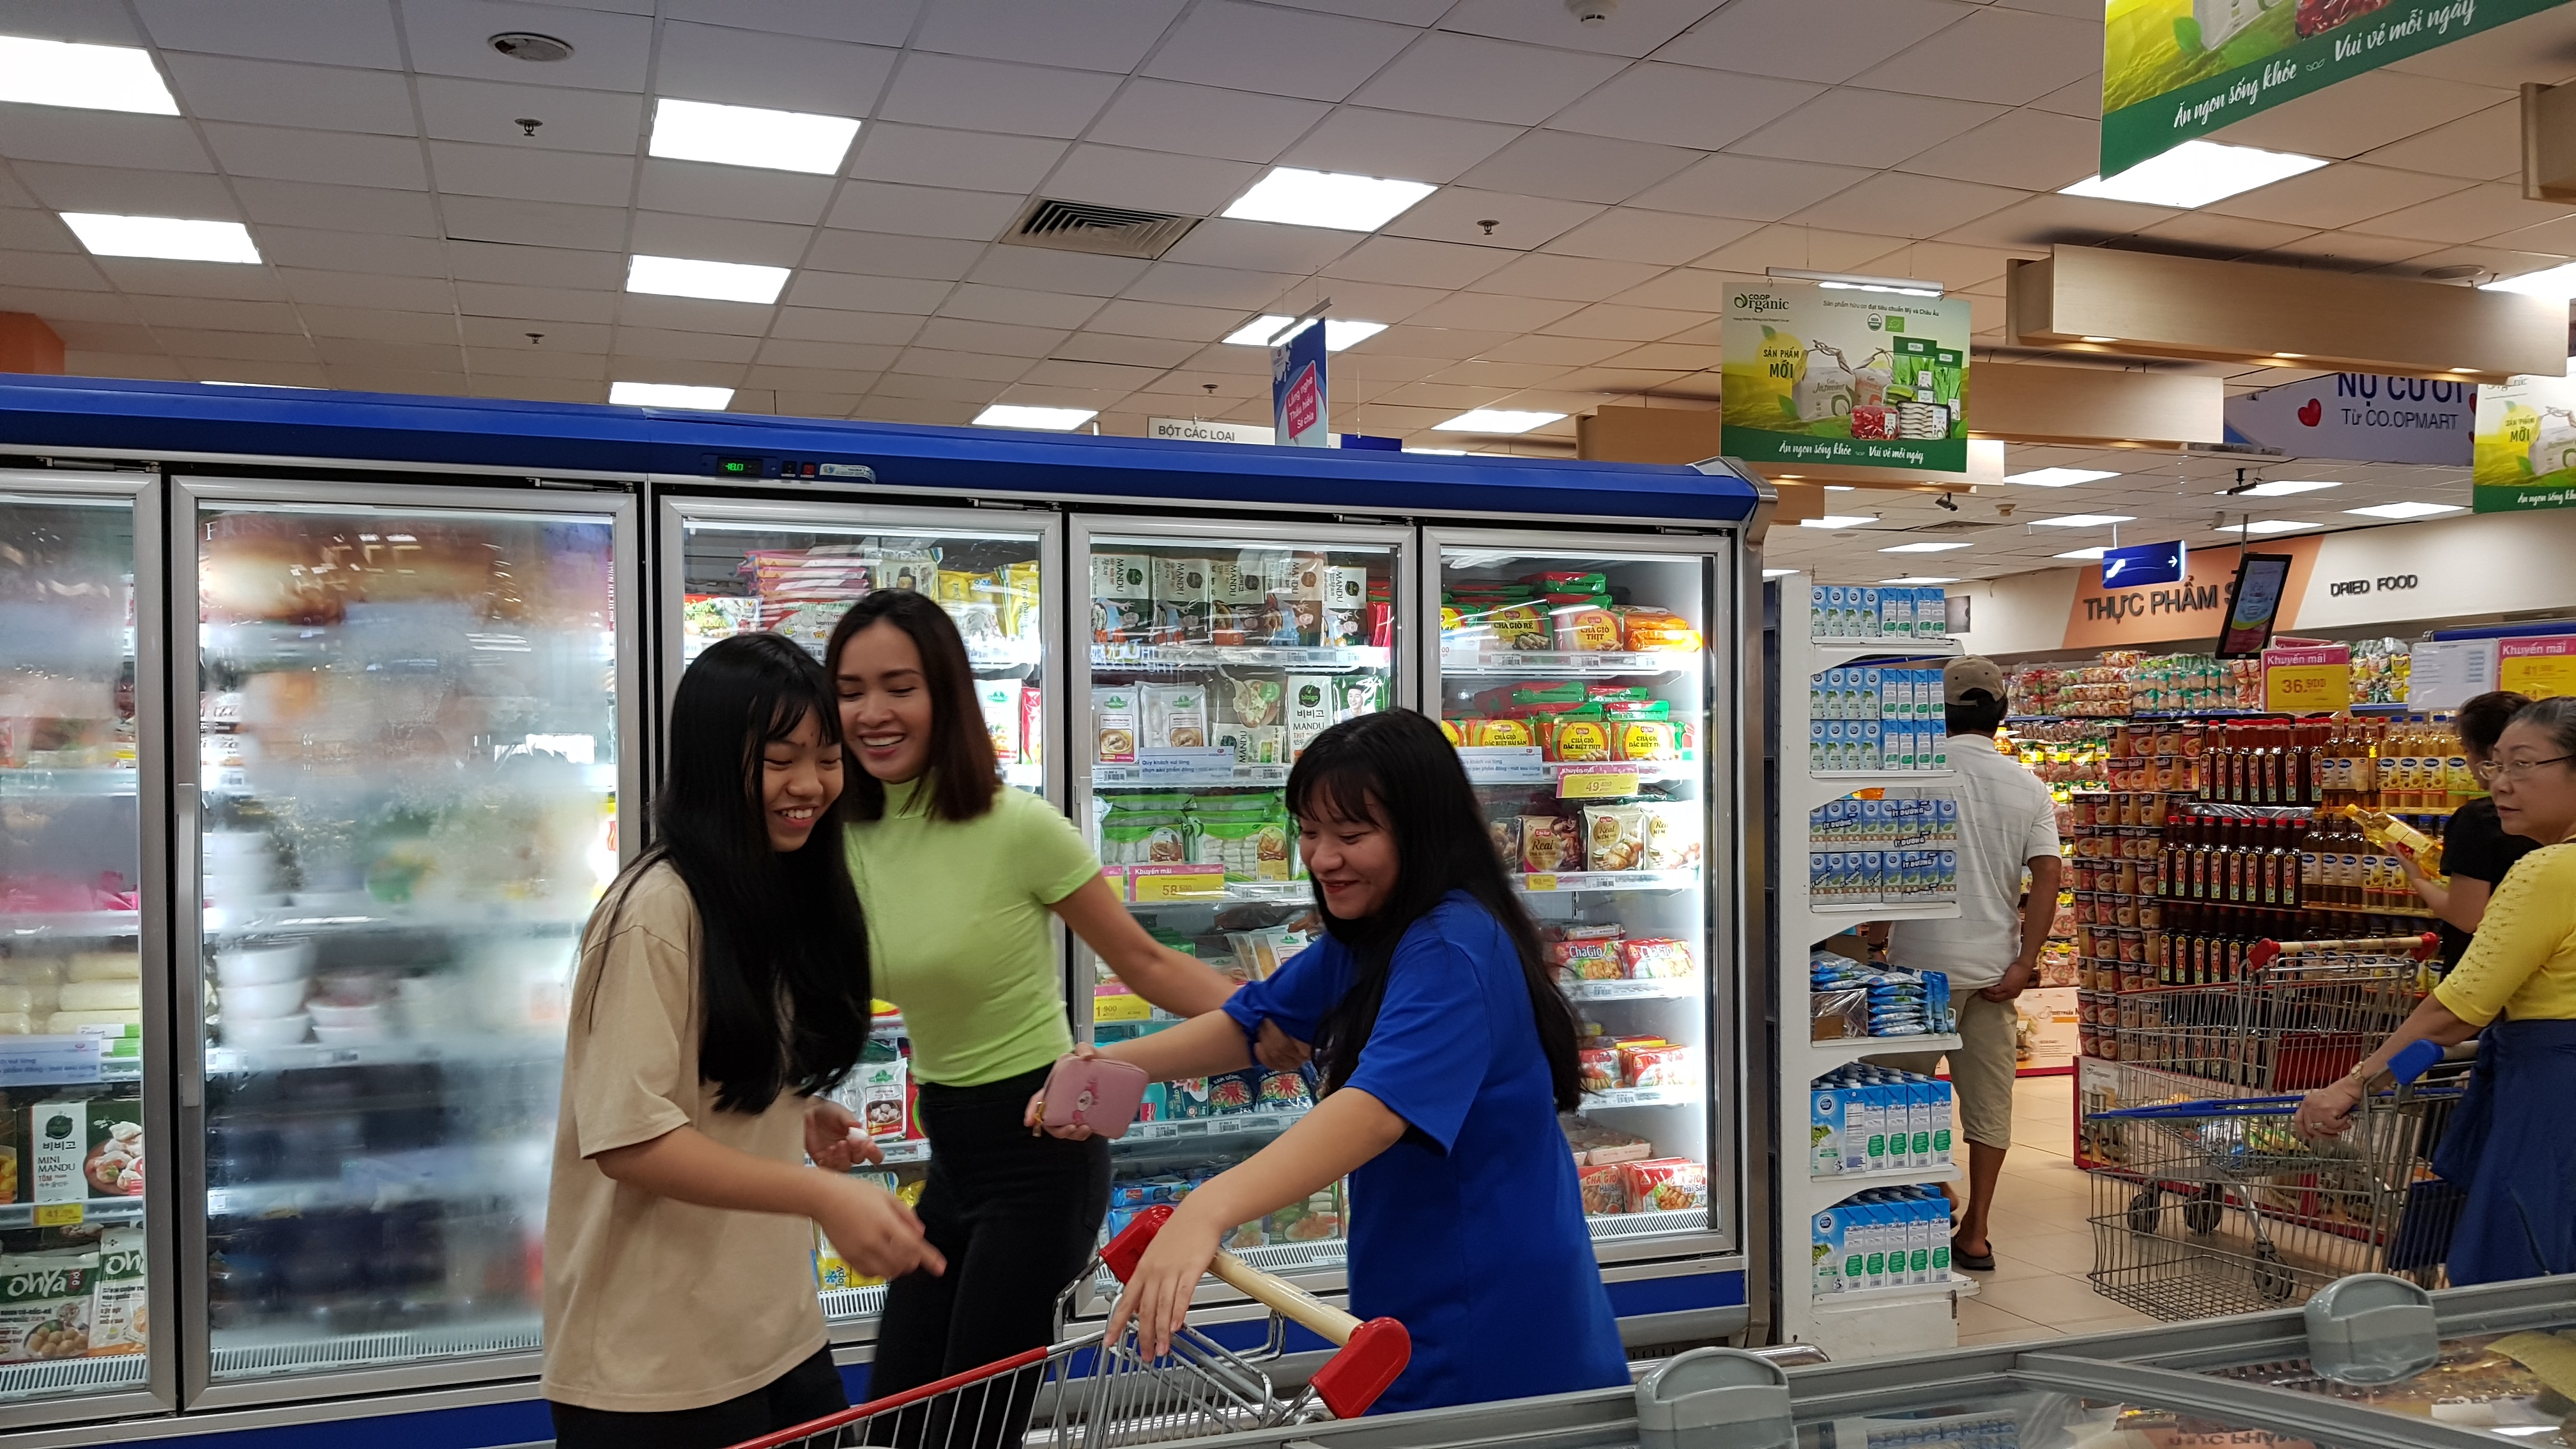 Ca sĩ Ái Phương mời các bạn trẻ cùng đi siêu thị - Ảnh: Cẩm Viên